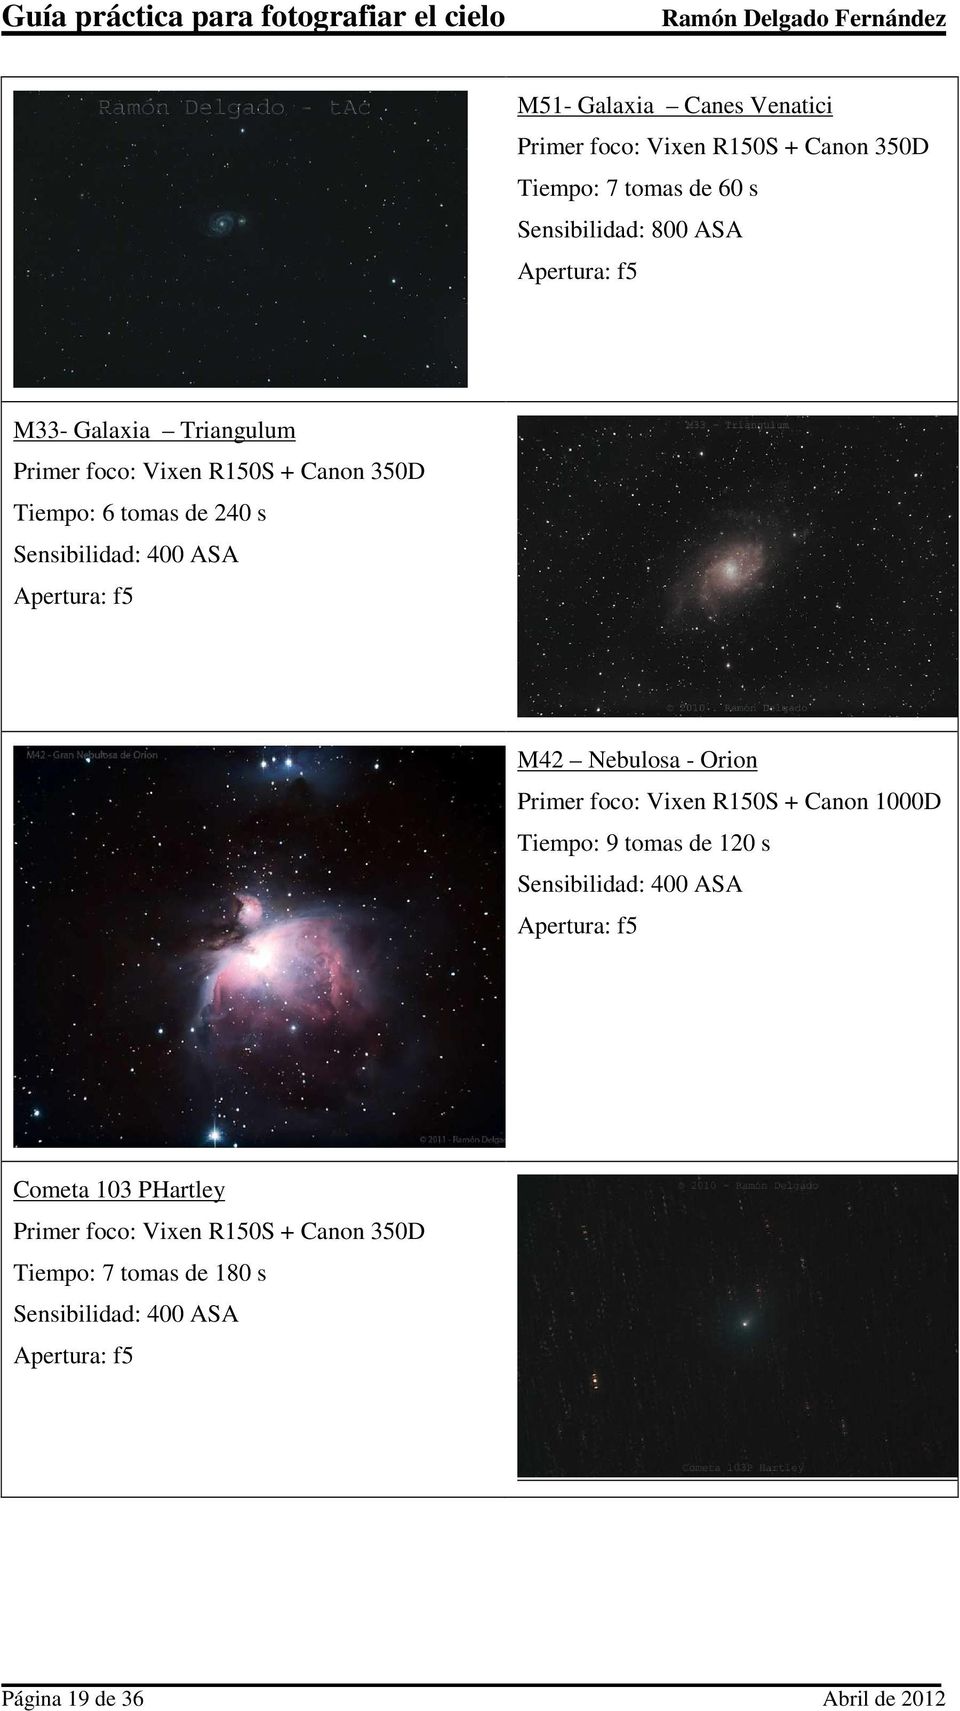 Nebulosa - Orion Primer foco: Vixen R150S + Canon 1000D Tiempo: 9 tomas de 120 s Sensibilidad: 400 ASA Apertura: f5 Cometa 103